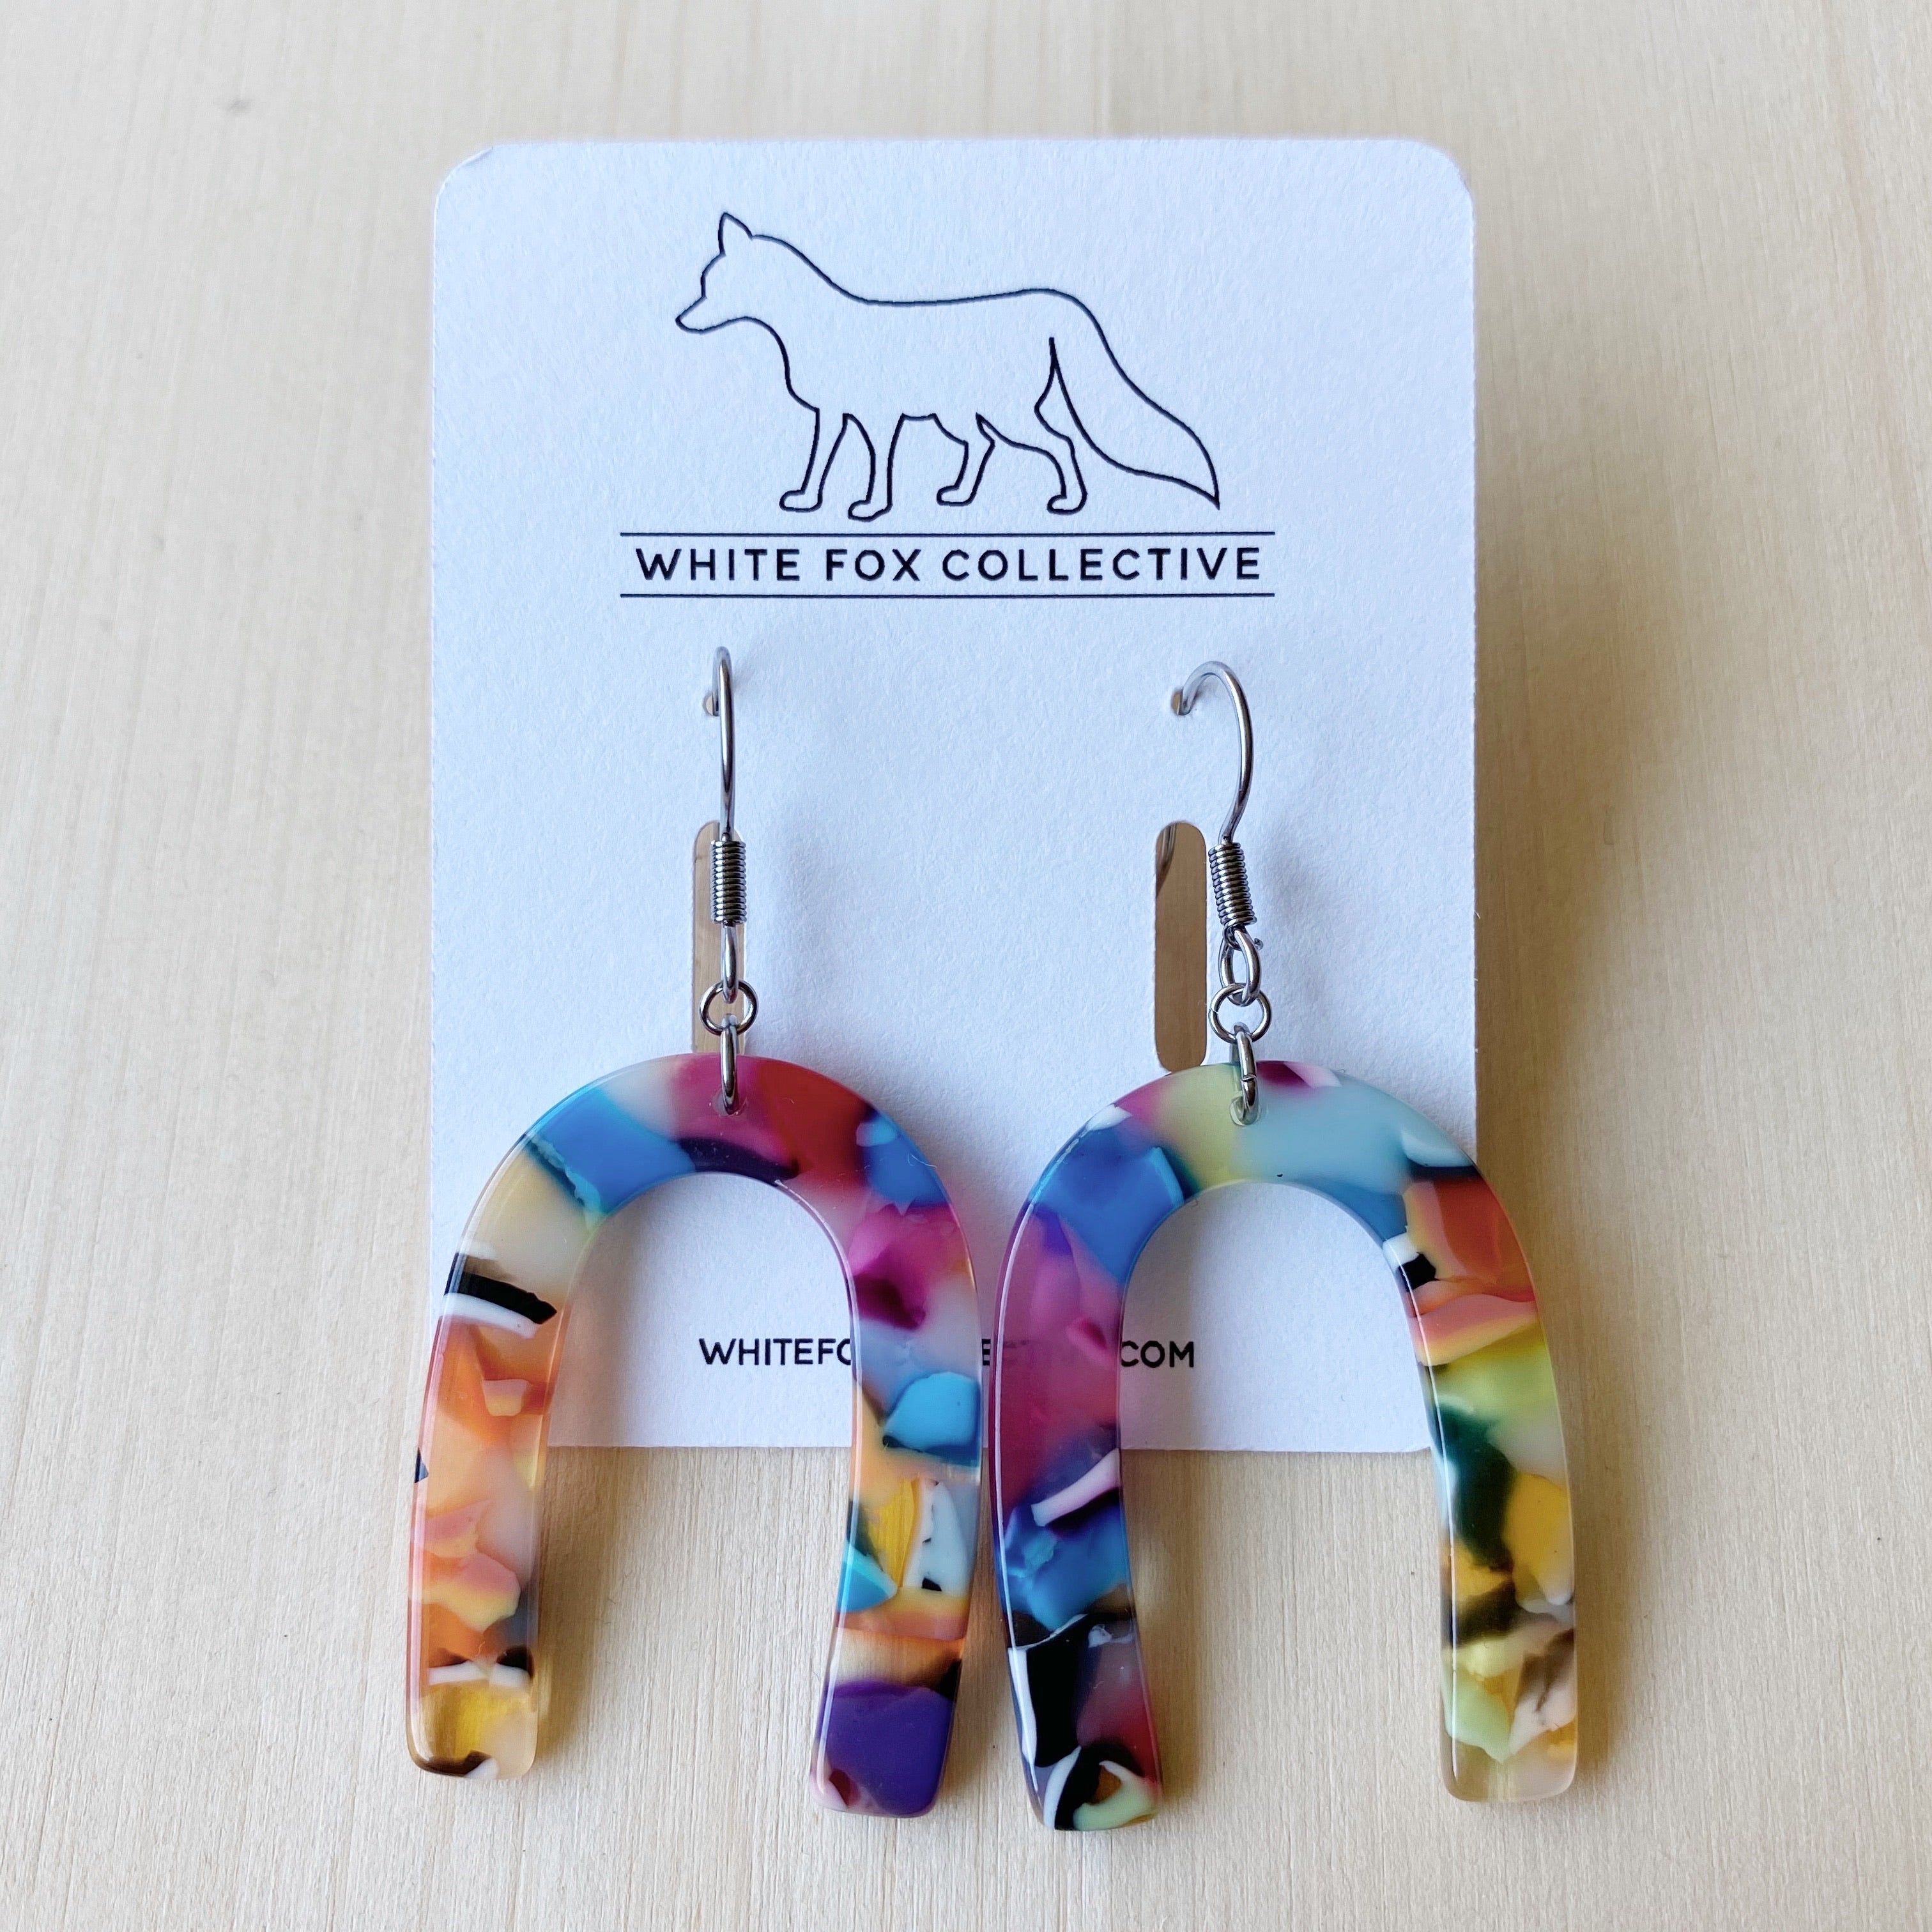 Horseshoe Acetate Earrings - Multicolour